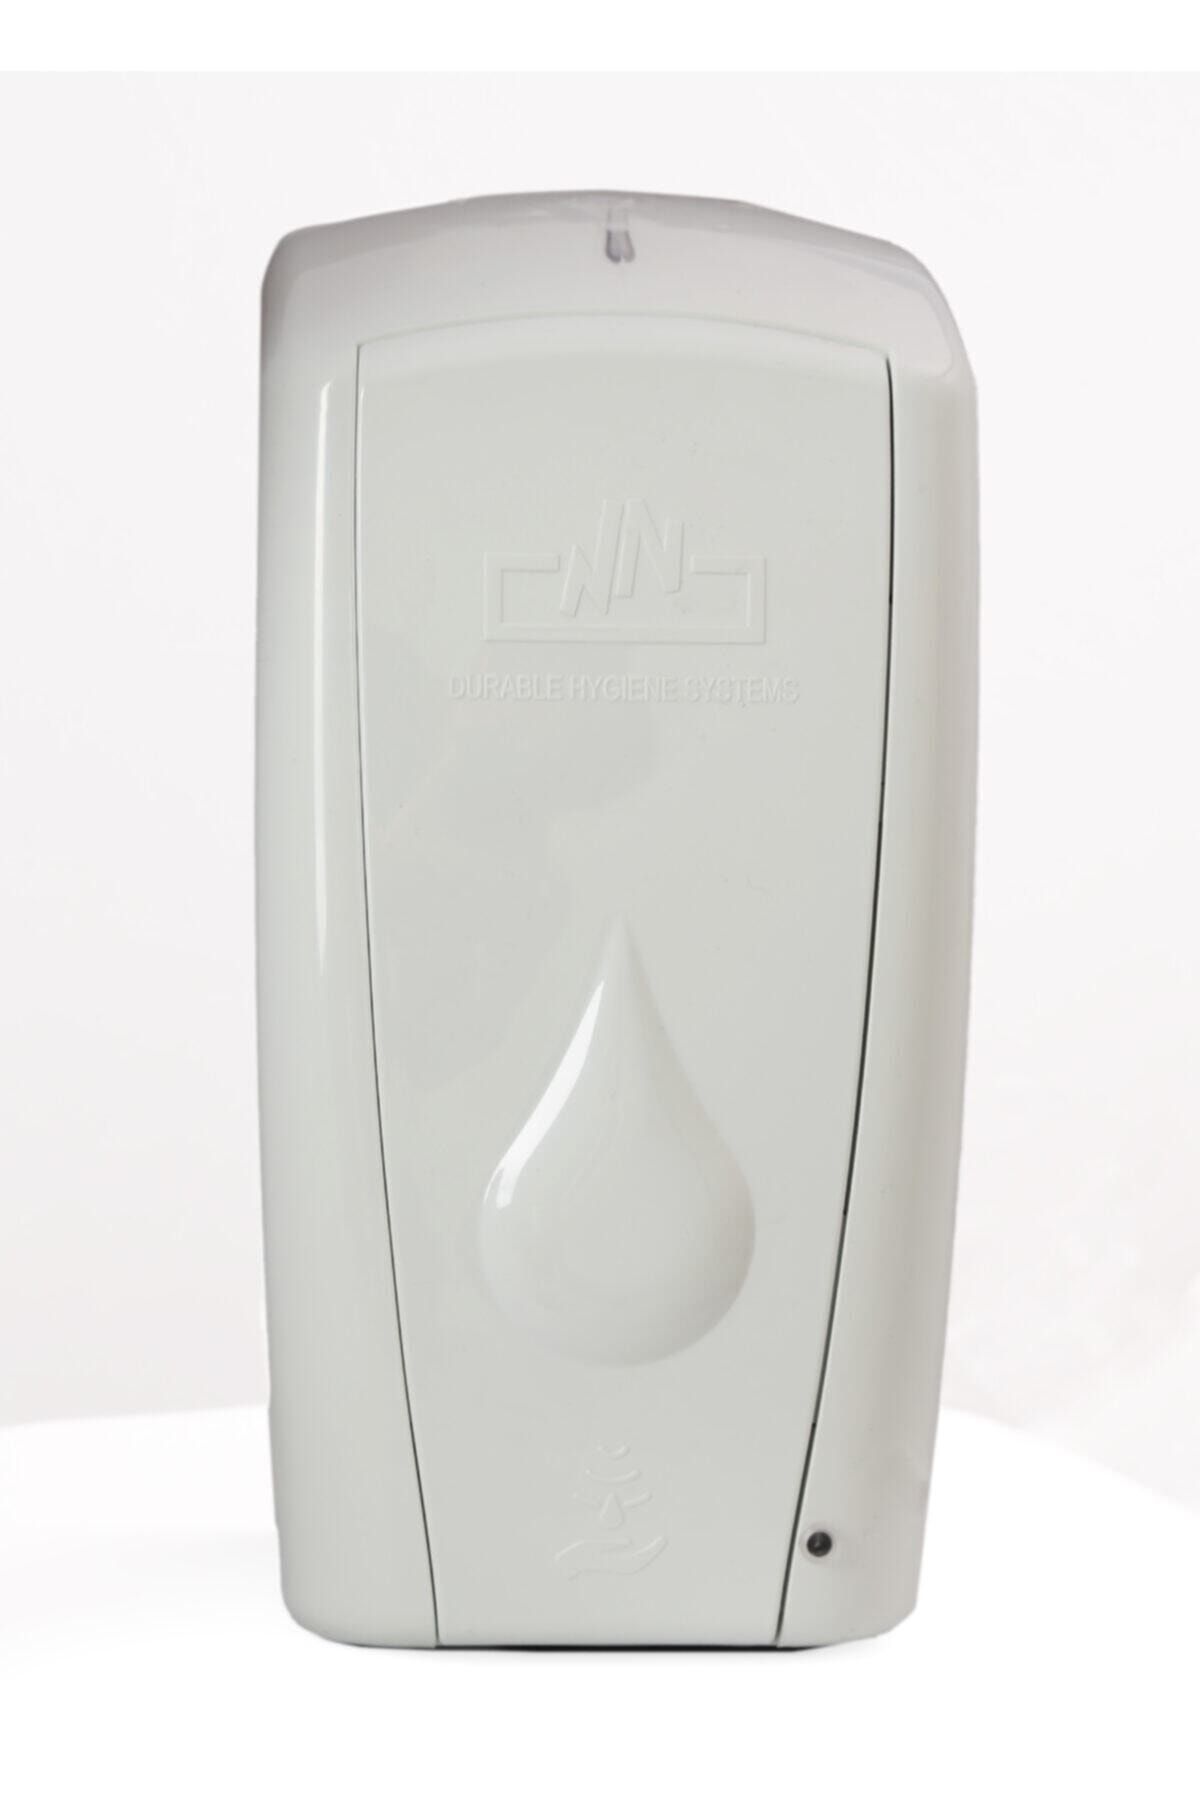 epicsan 1 L Fotoselli Sensörlü Köpük Sabun Dispenser Cihazı Dolum Yapılan